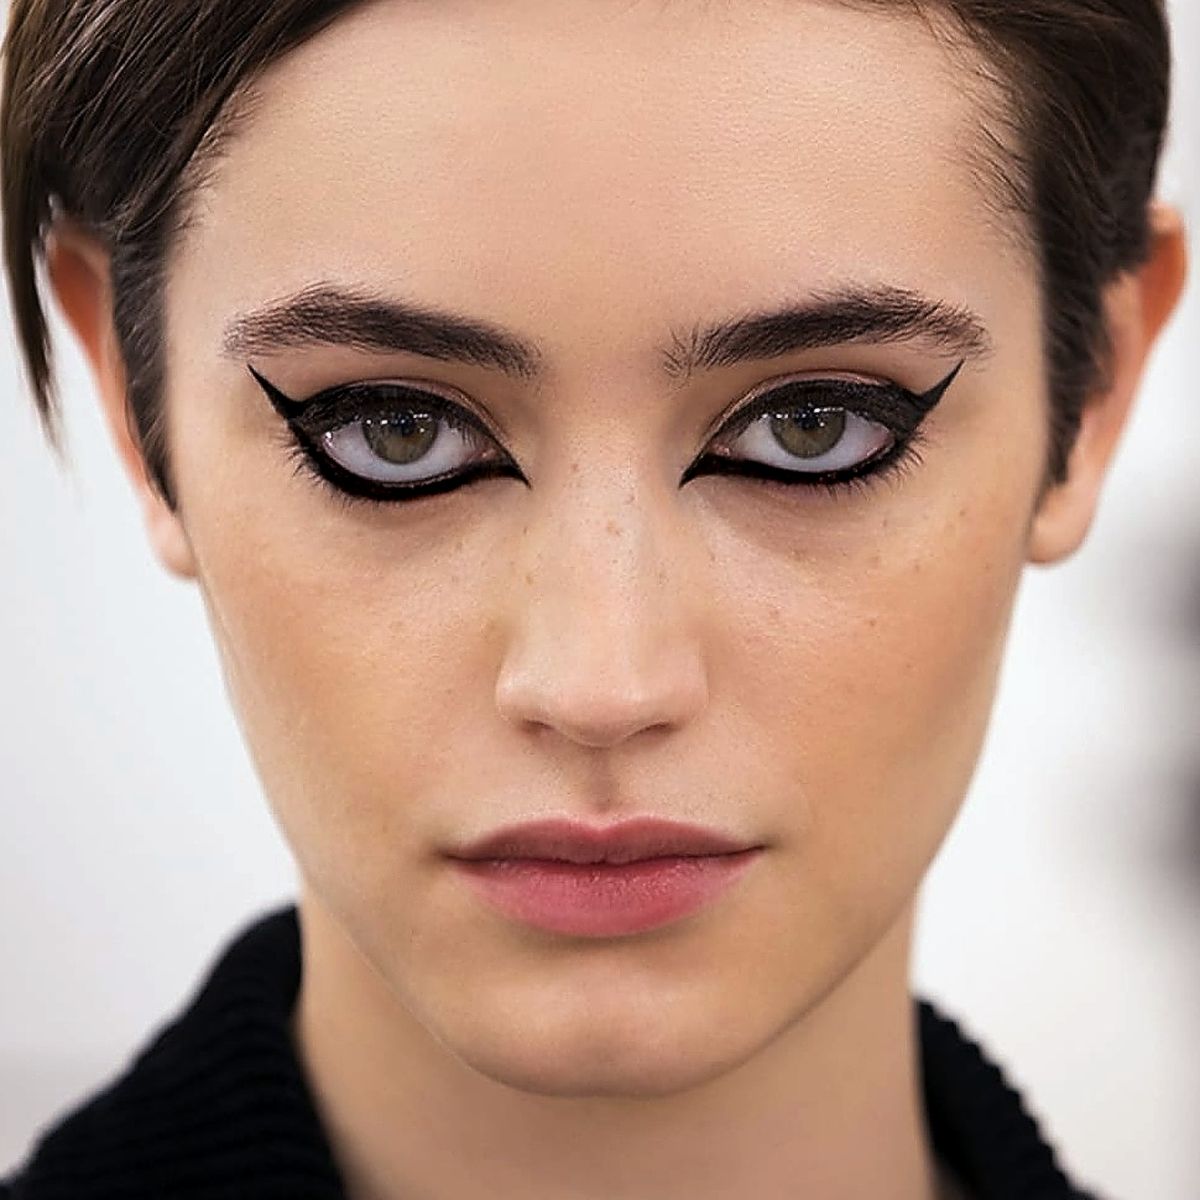 Как создавался макияж для шоу Chanel Métiers d'art 2021/22, фото 1